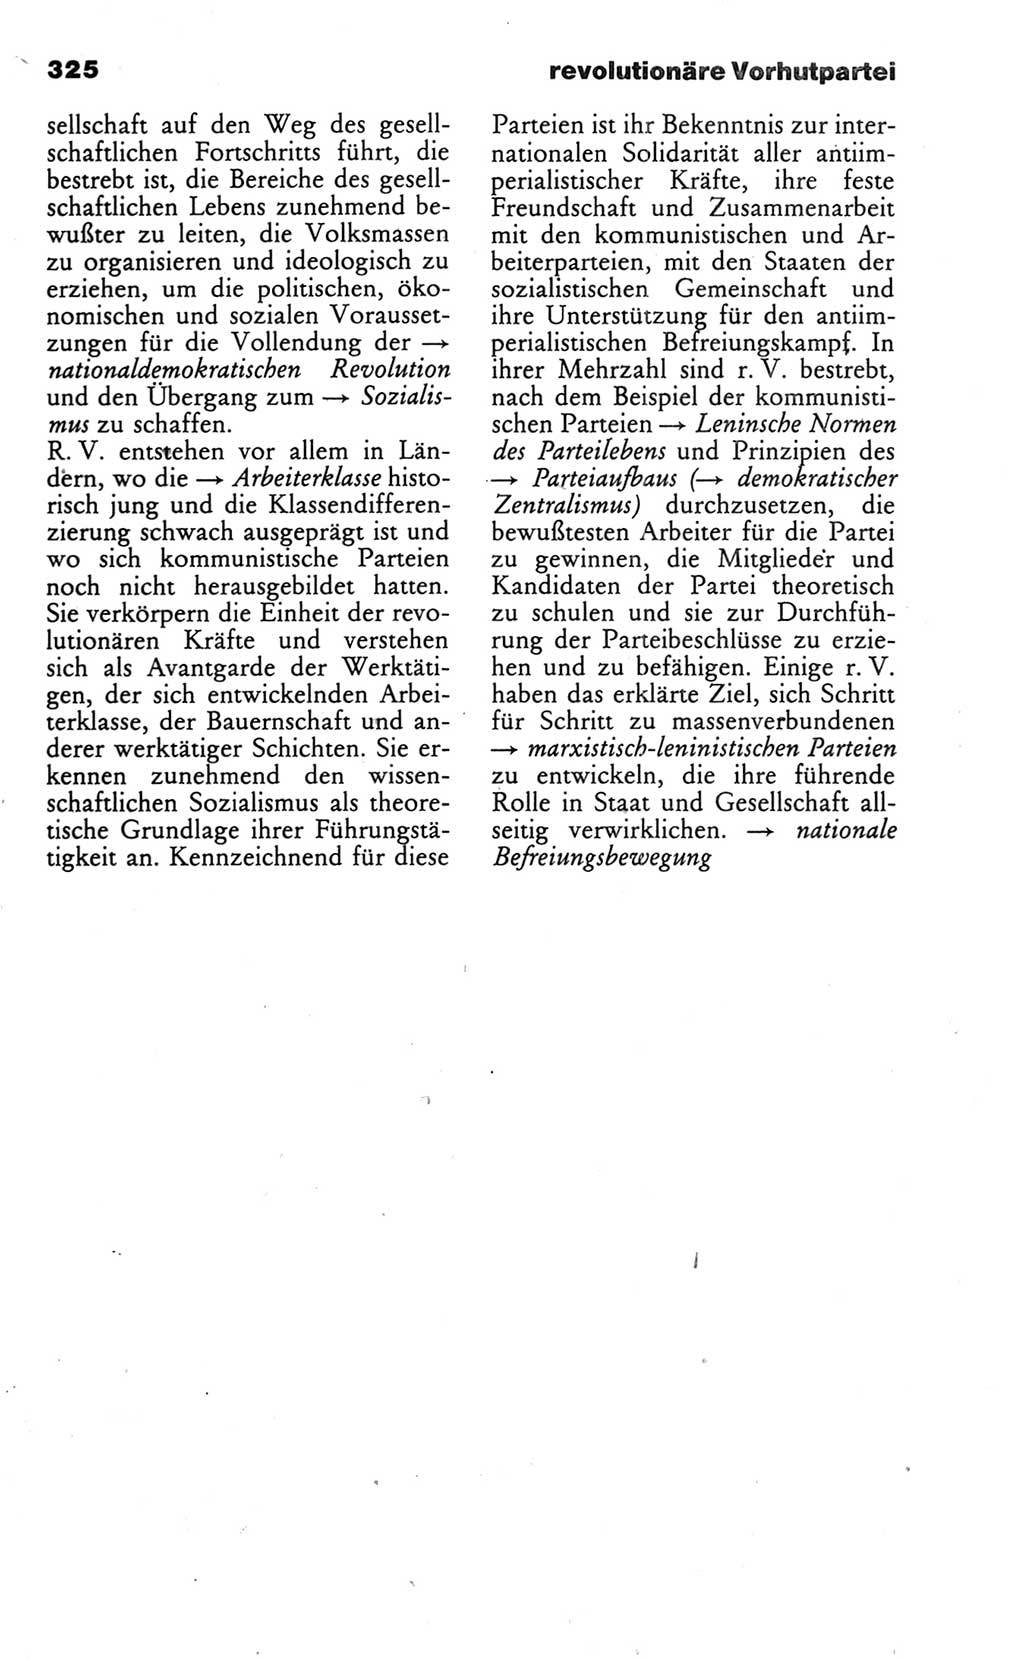 Wörterbuch des wissenschaftlichen Kommunismus [Deutsche Demokratische Republik (DDR)] 1986, Seite 325 (Wb. wiss. Komm. DDR 1986, S. 325)